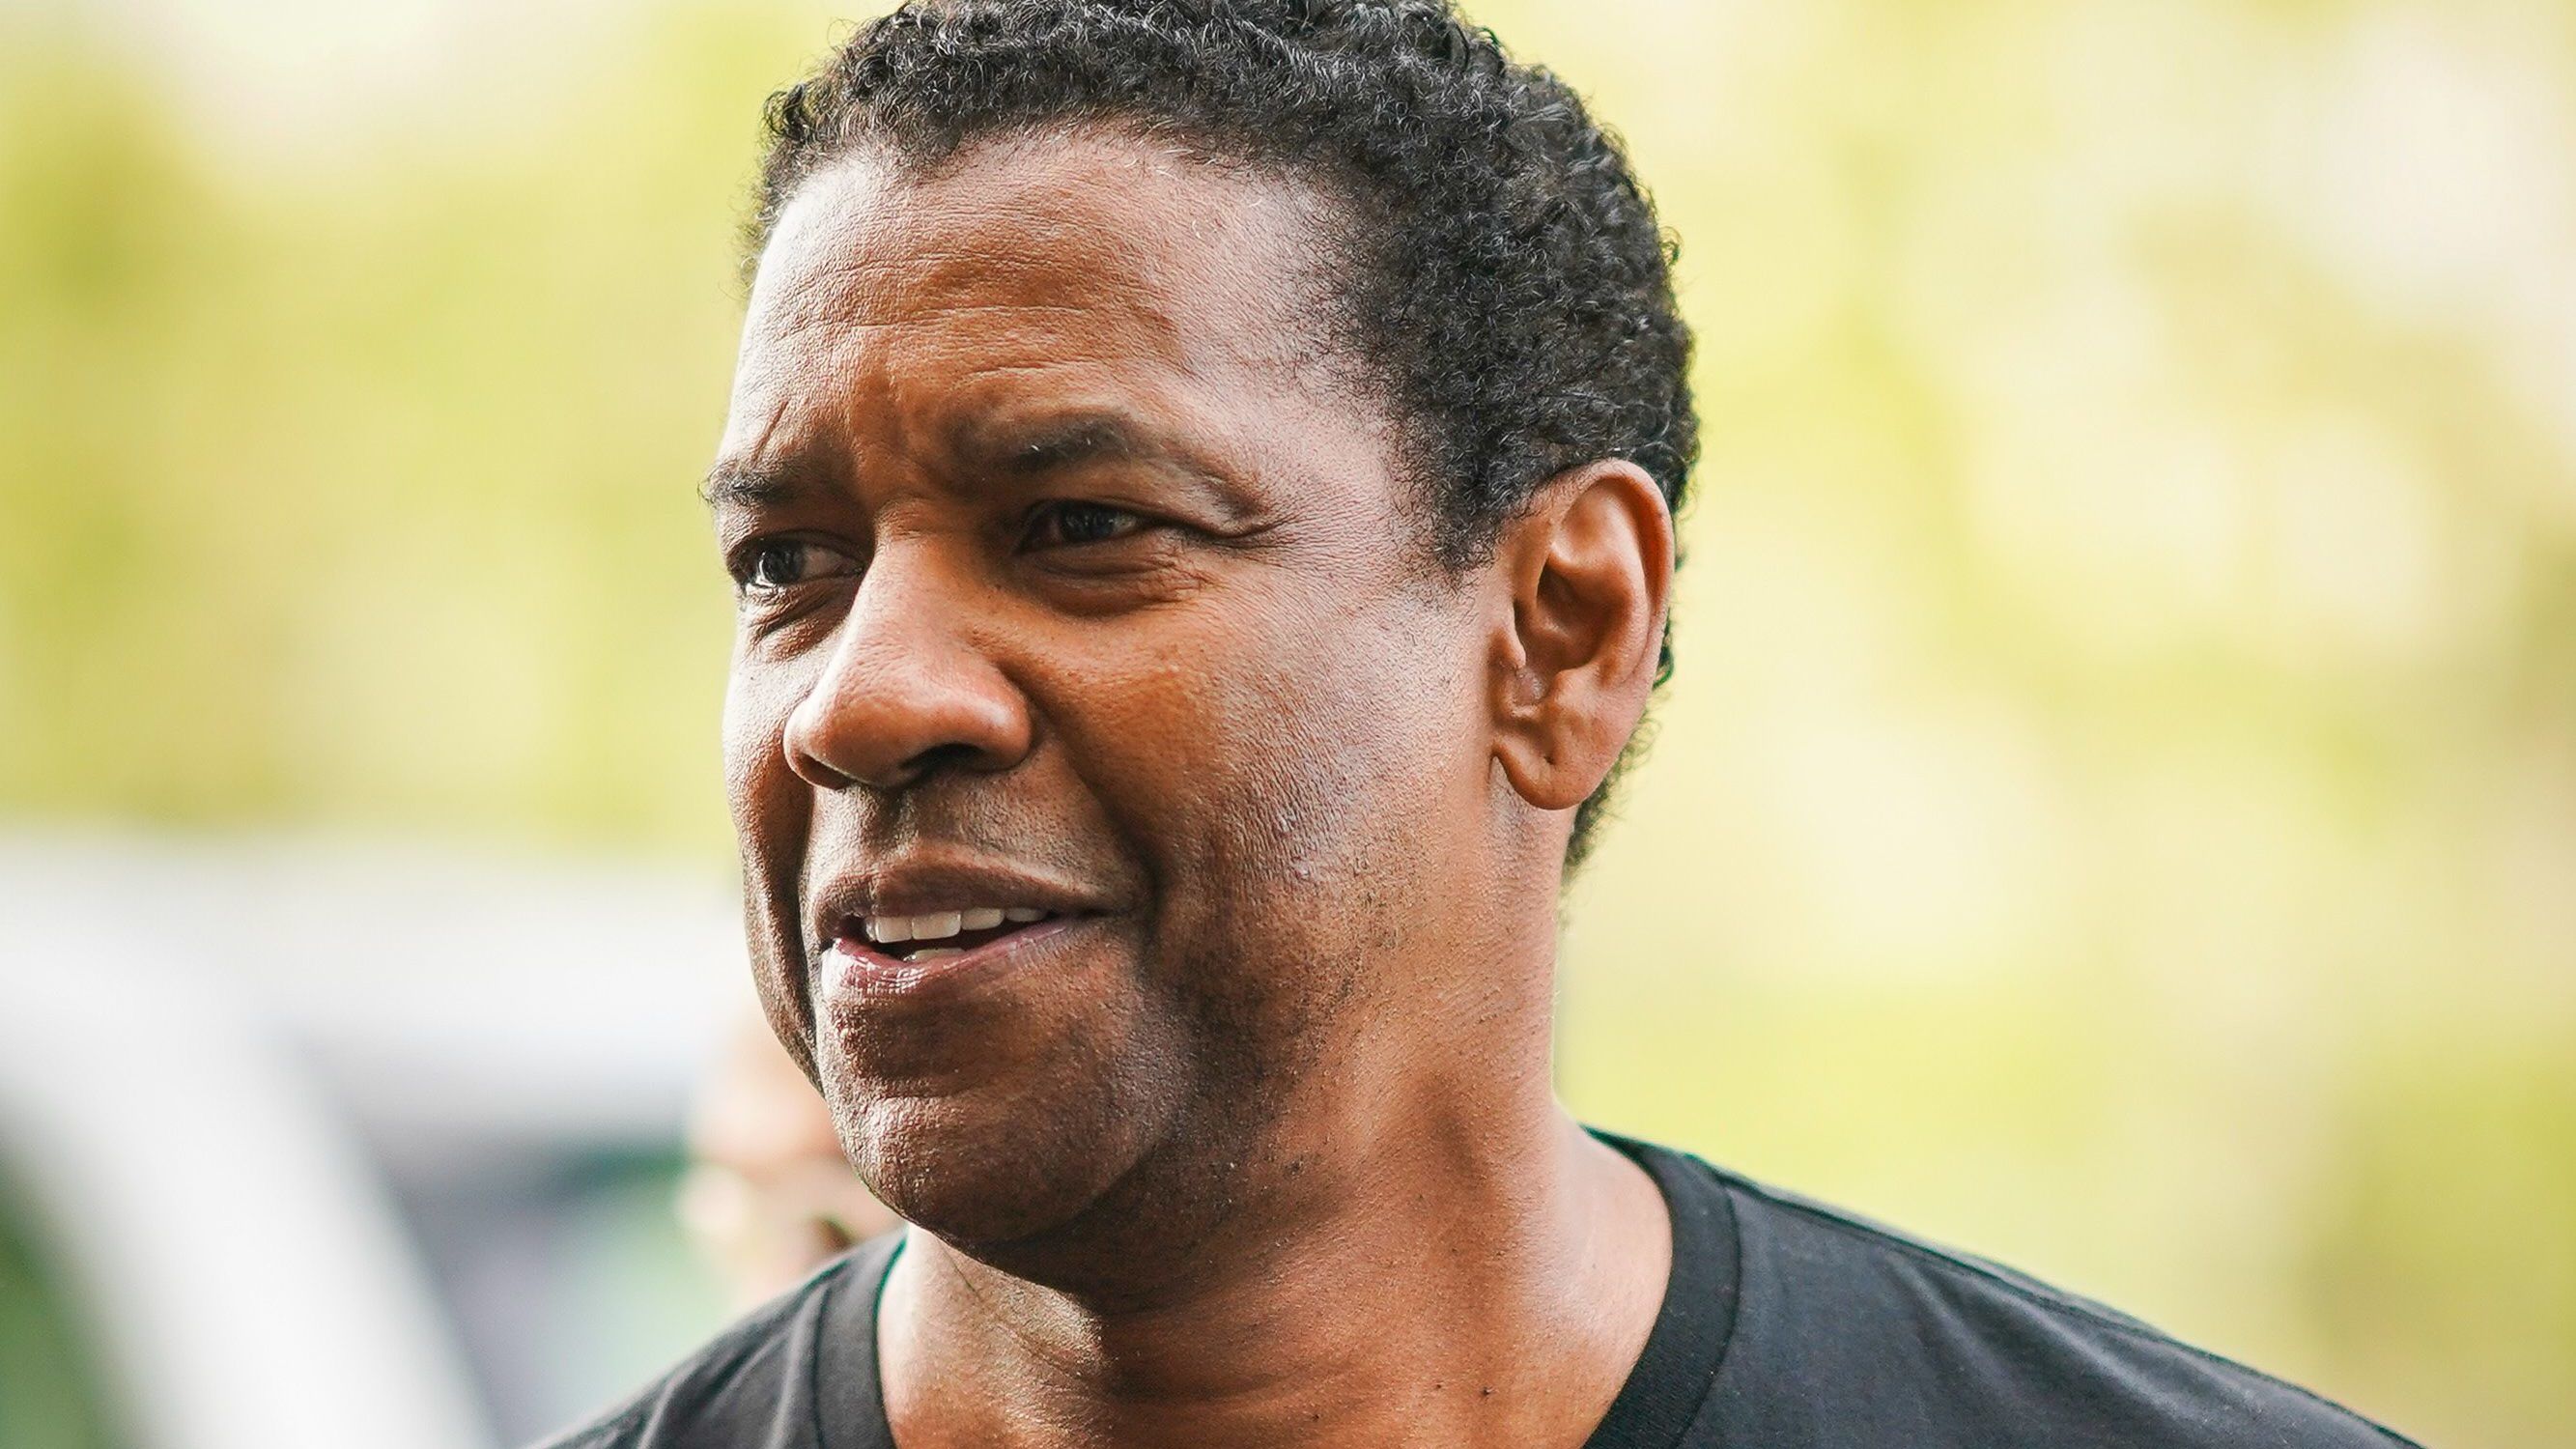 Denzel Washington kiszállt a kocsijából, hogy segítsen egy összezavarodott hajléktalanon